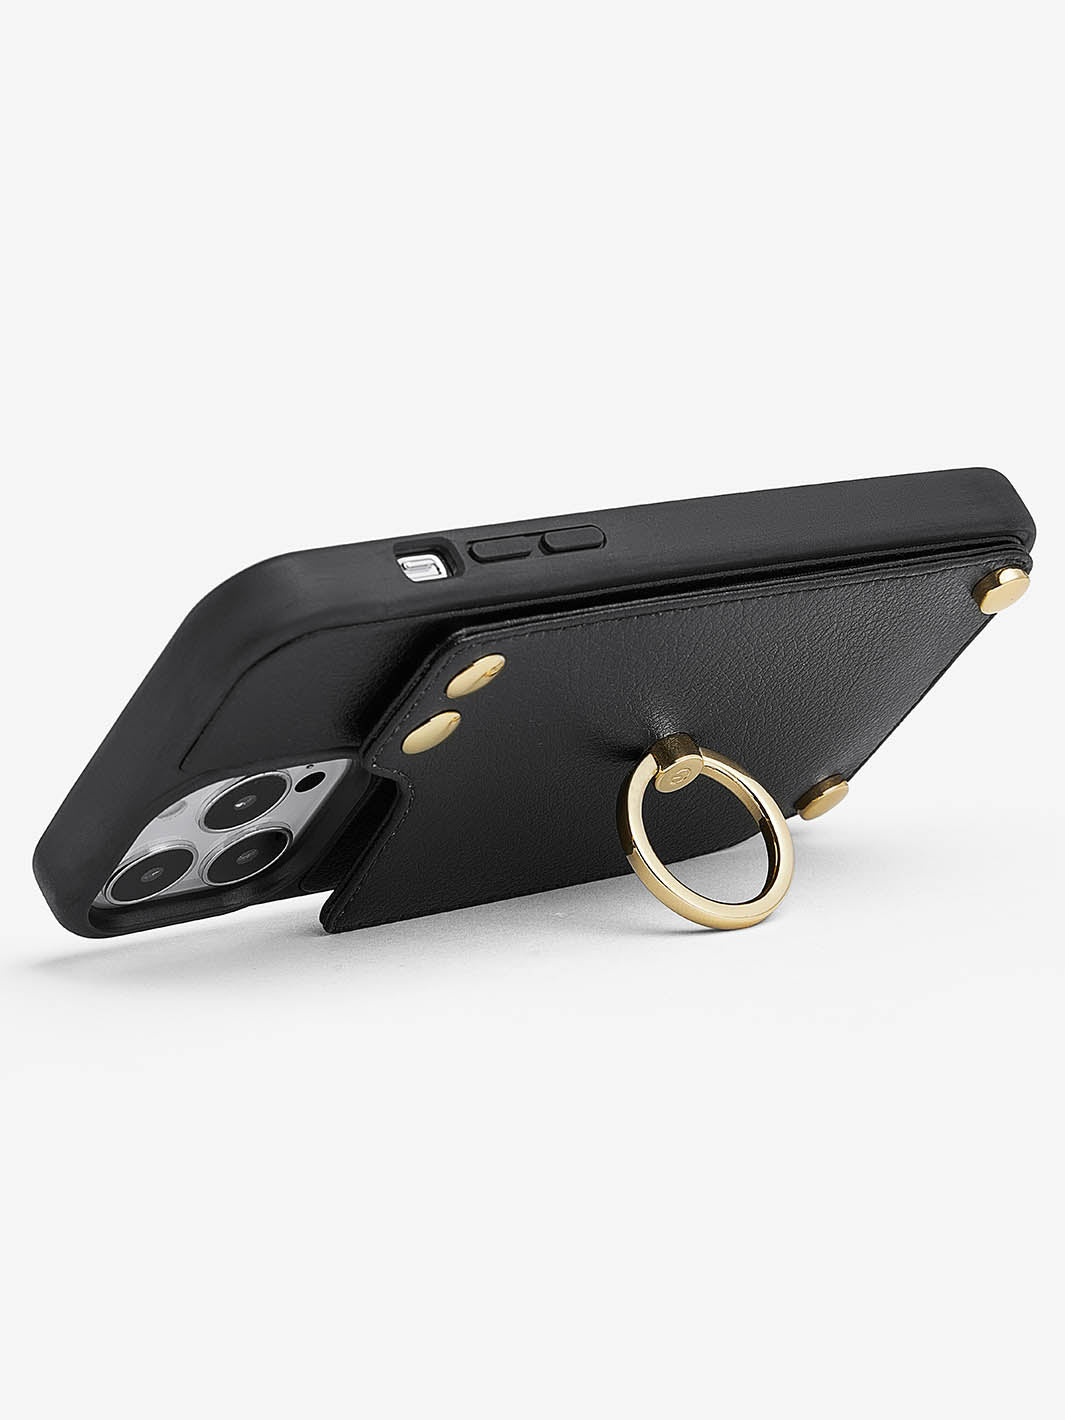 StandEase- Ring Holder Phone Case-black